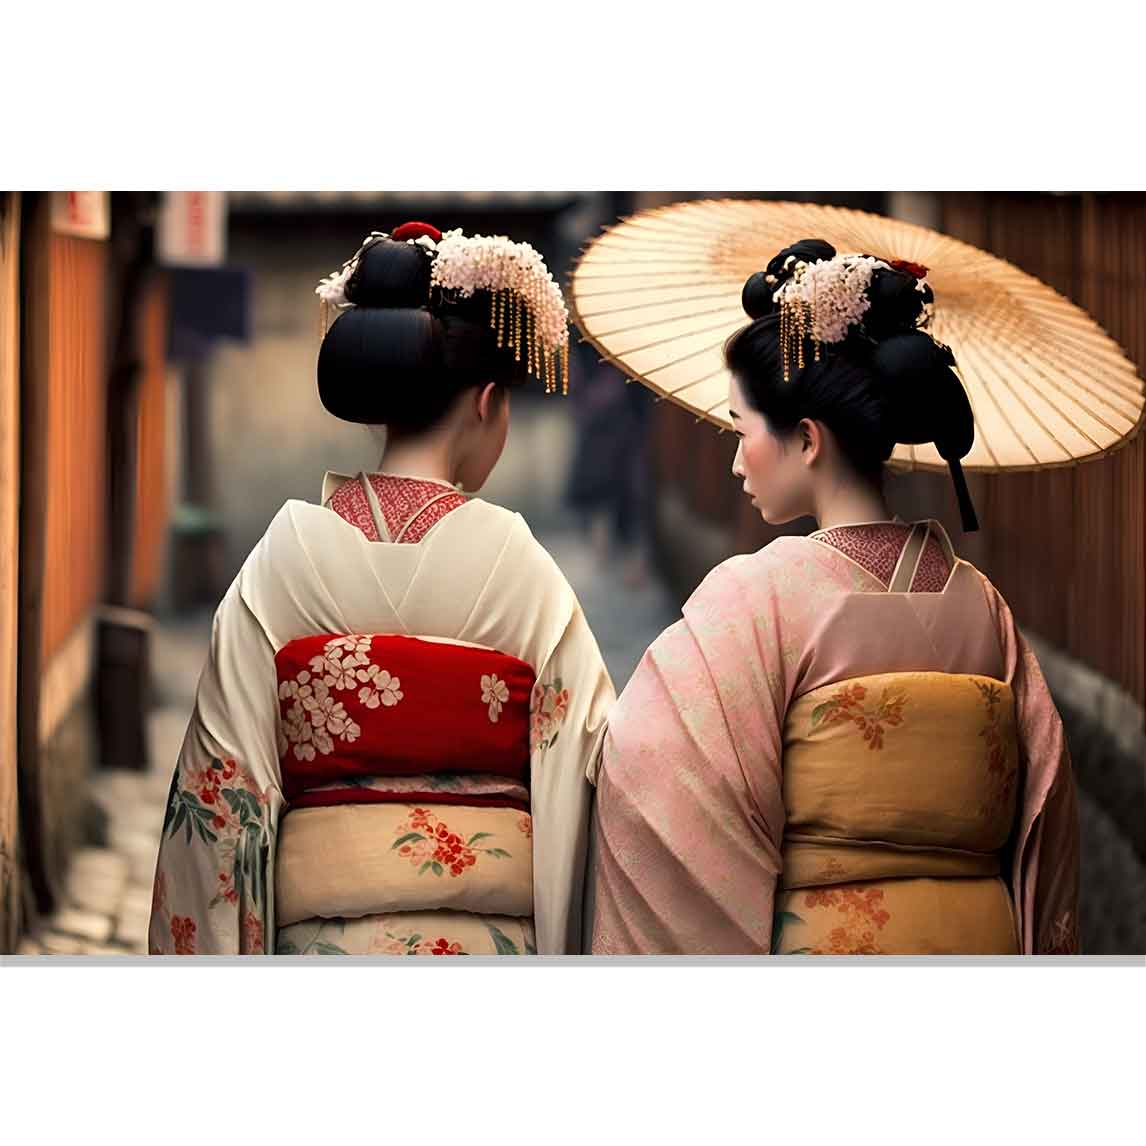 ASIA GIRLS - Japan